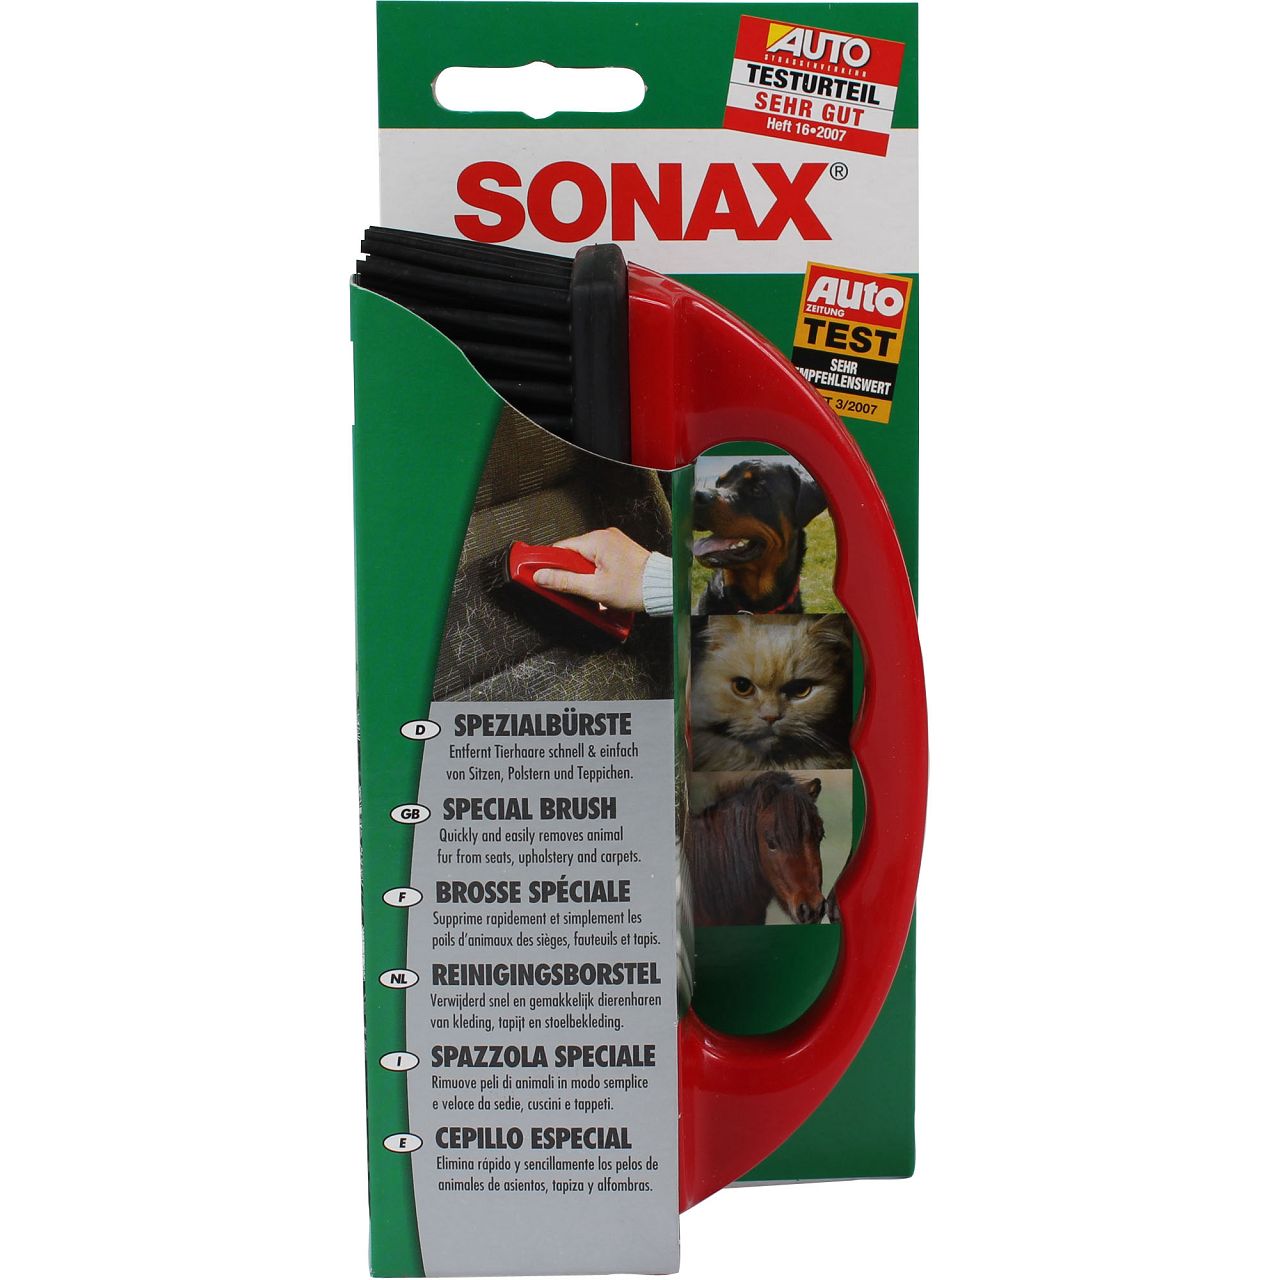 SONAX SpezialBürste Tierhaarbürste zur Entfernung von Tierhaaren 491400